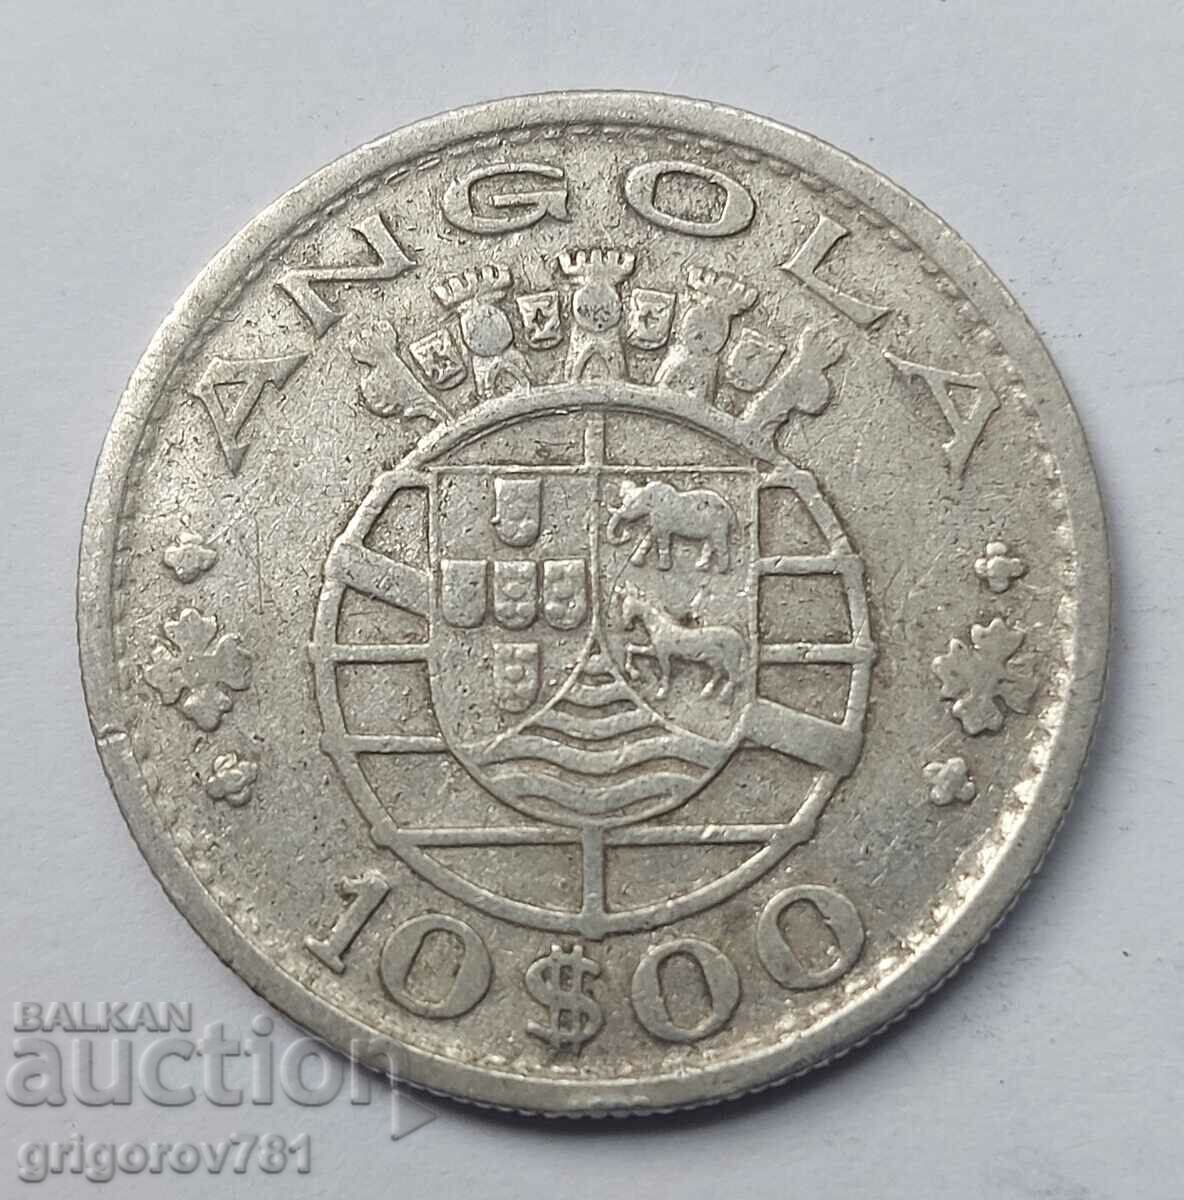 10 Escudo Silver Angola 1952 - Silver Coin #6